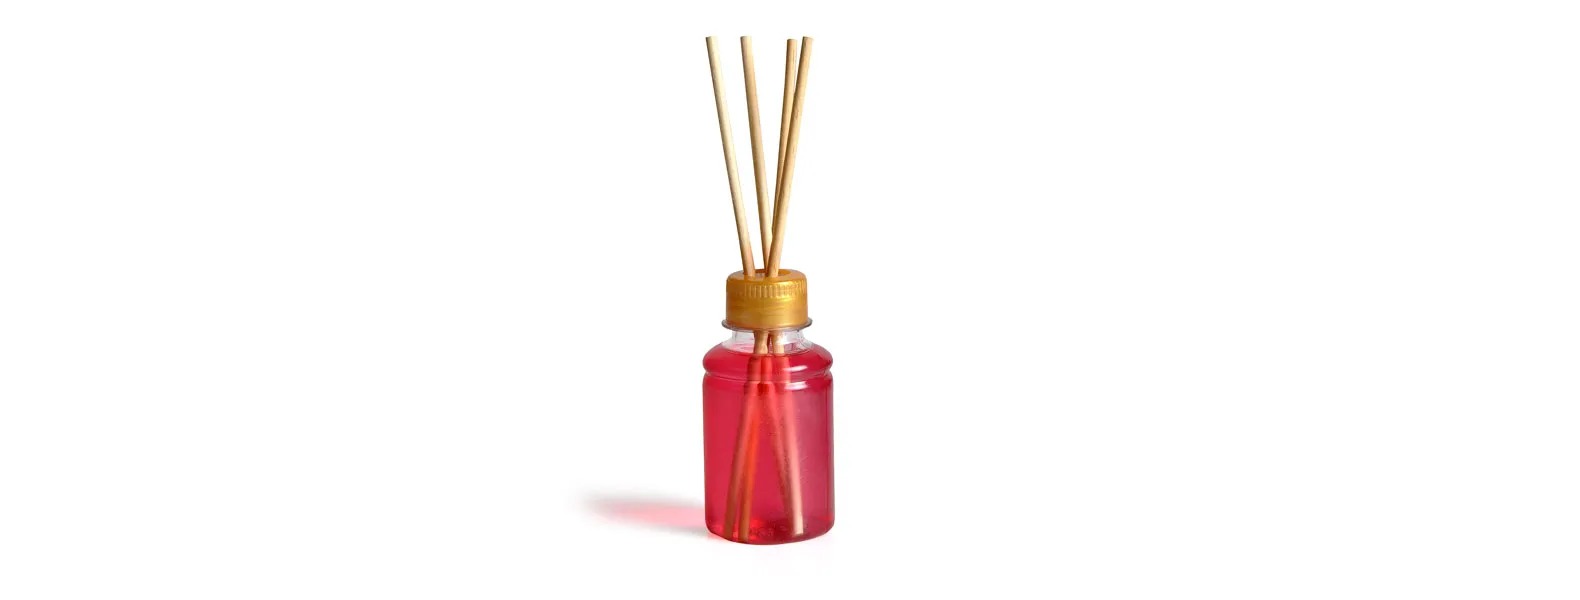 Kit bandeja, aromatizador e acessórios. Composto por bandeja oval em bambu; garrafa transparente em PET; porta-retrato em alumínio; aromatizador de ambiente com fragrância de cereja e avelã.